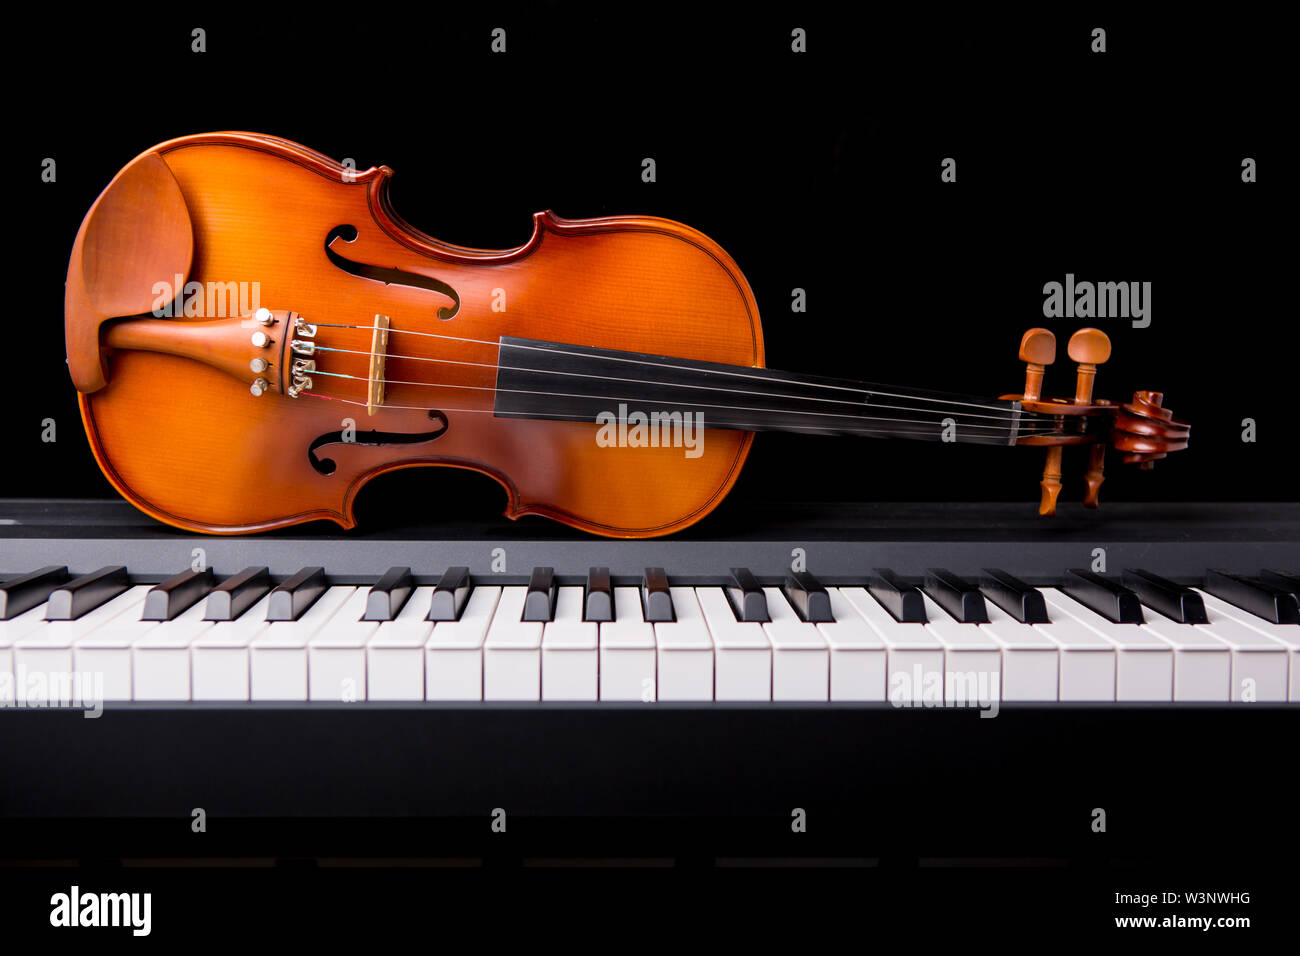 Trải nghiệm âm nhạc cổ điển đầy cảm xúc với hình ảnh đàn violin và đàn piano chơi trên nền màu đen. Những nốt nhạc du dương, tình cảm trong từng giai điệu sẽ mang đến cho bạn một trải nghiệm thú vị và đầy ý nghĩa. Hãy xem ảnh Stock trên Alamy ngay để khám phá thế giới âm nhạc tuyệt vời này!